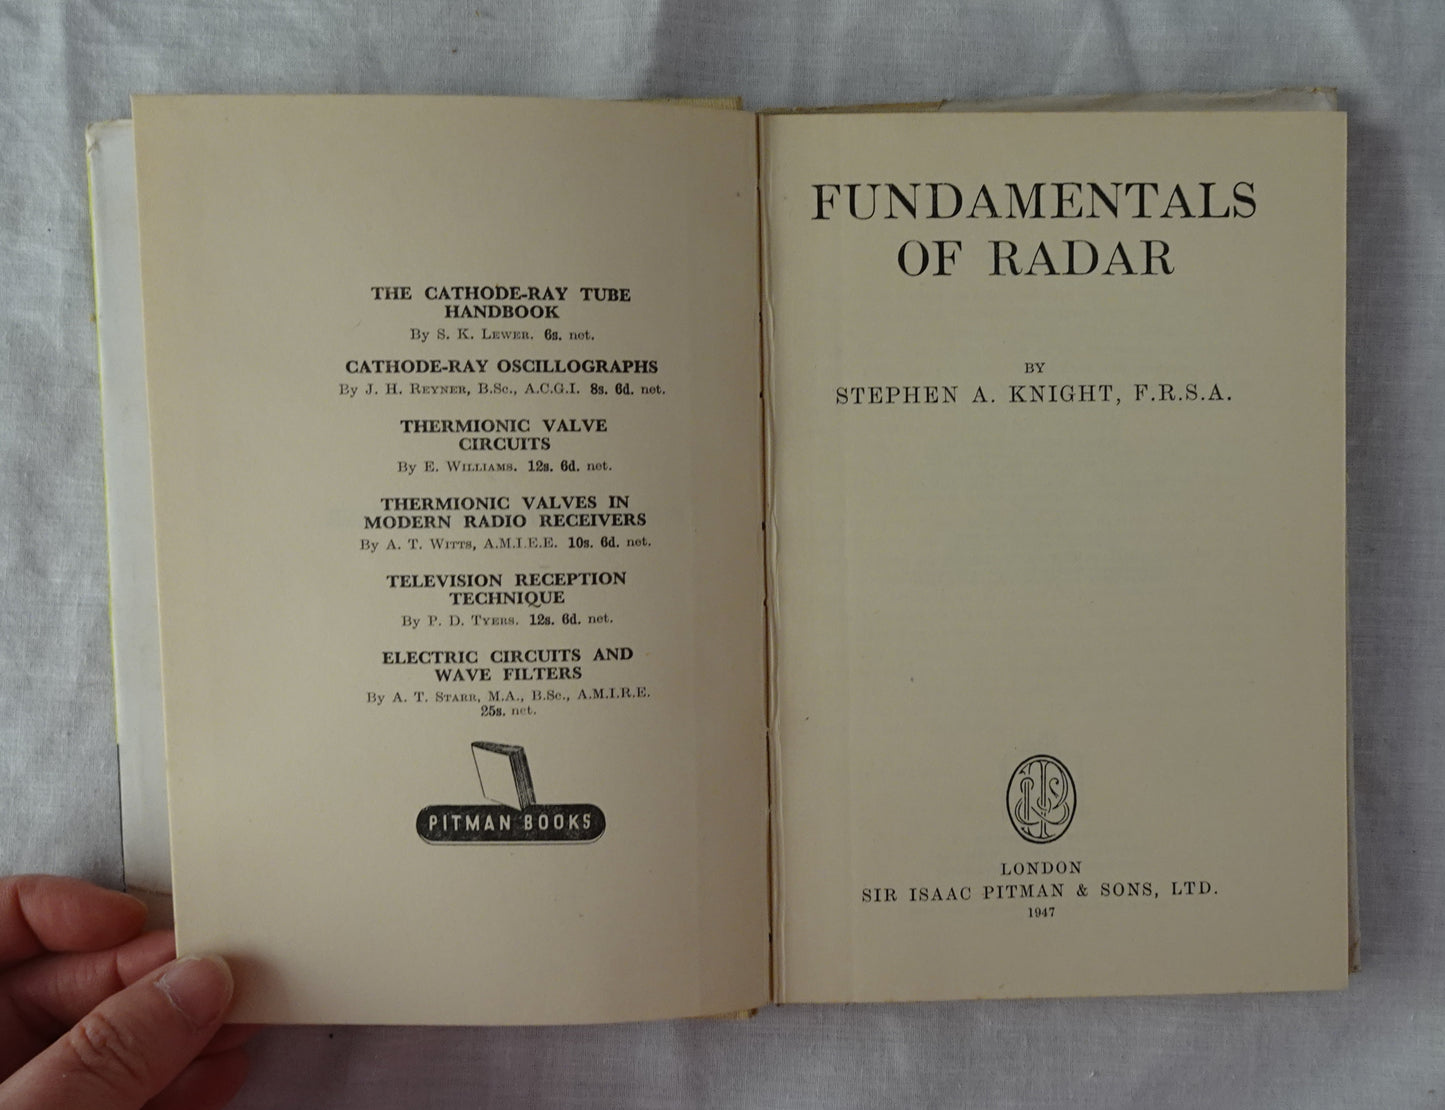 Fundamentals of Radar by Stephen A. Knight